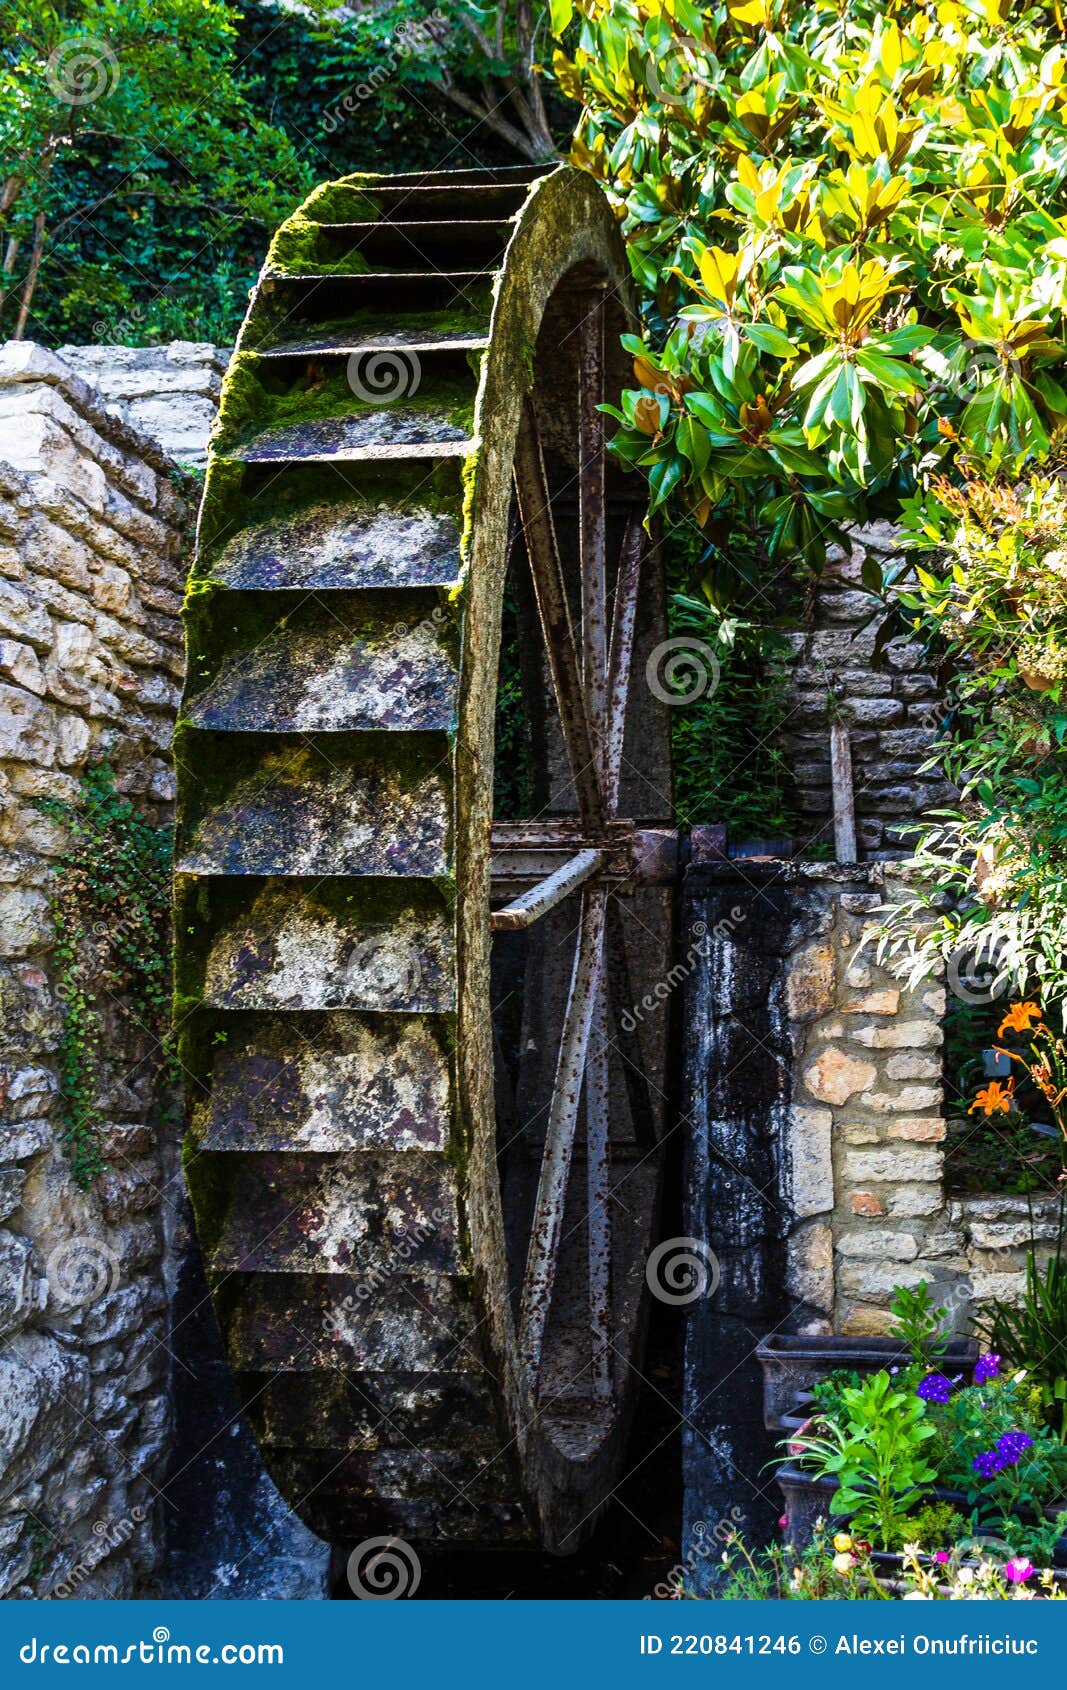 Старинные французские водяные мельницы | Пикабу